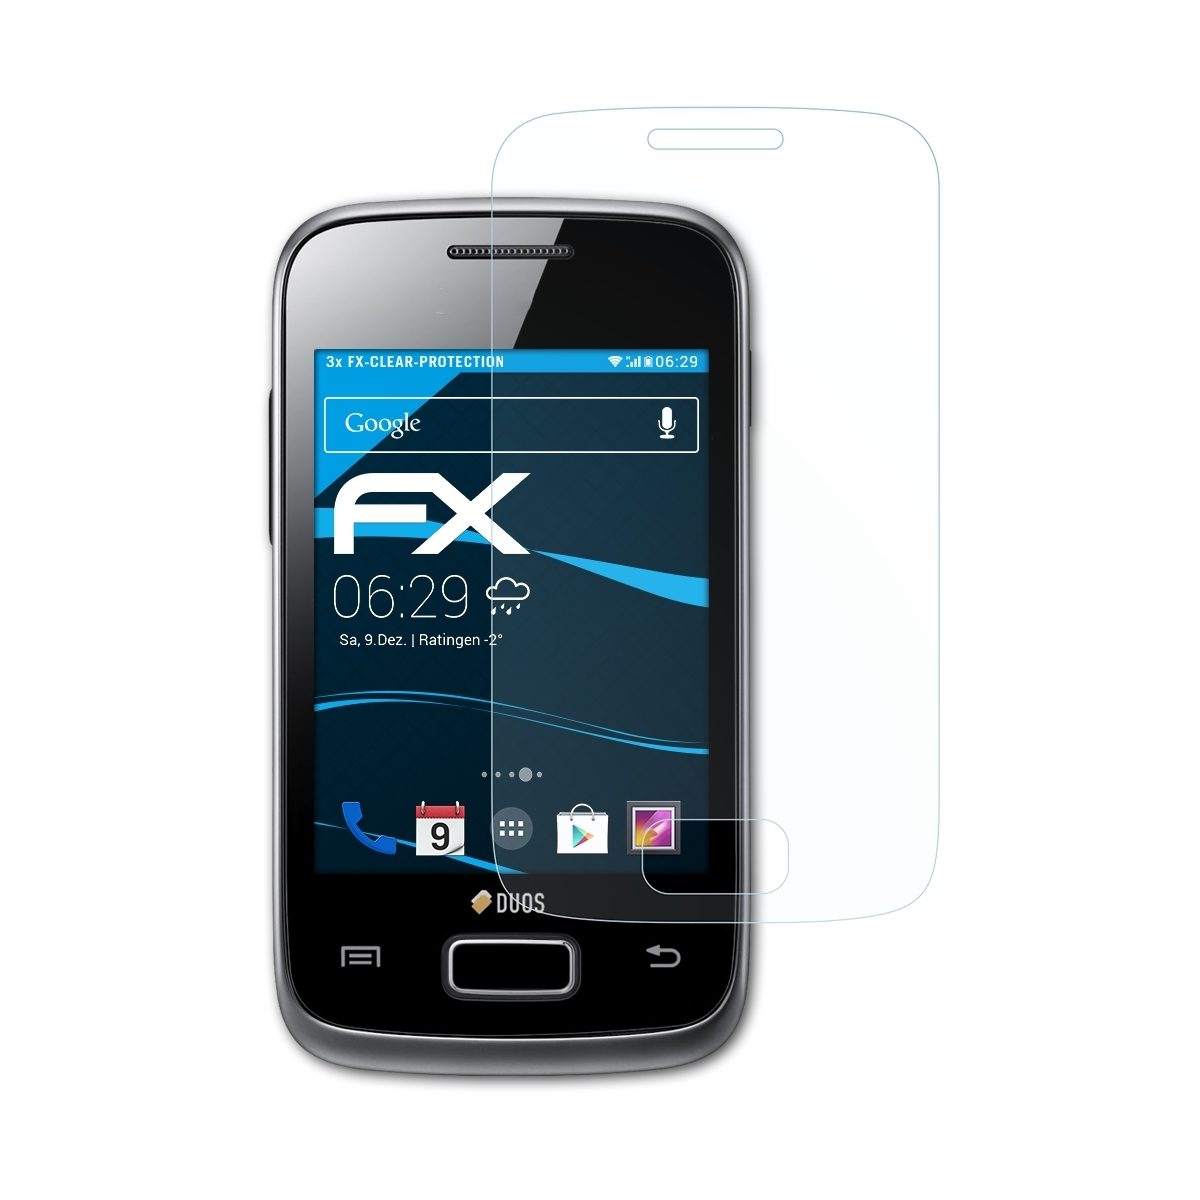 (GT-S6102)) Y Samsung Galaxy 3x Duos Displayschutz(für ATFOLIX FX-Clear